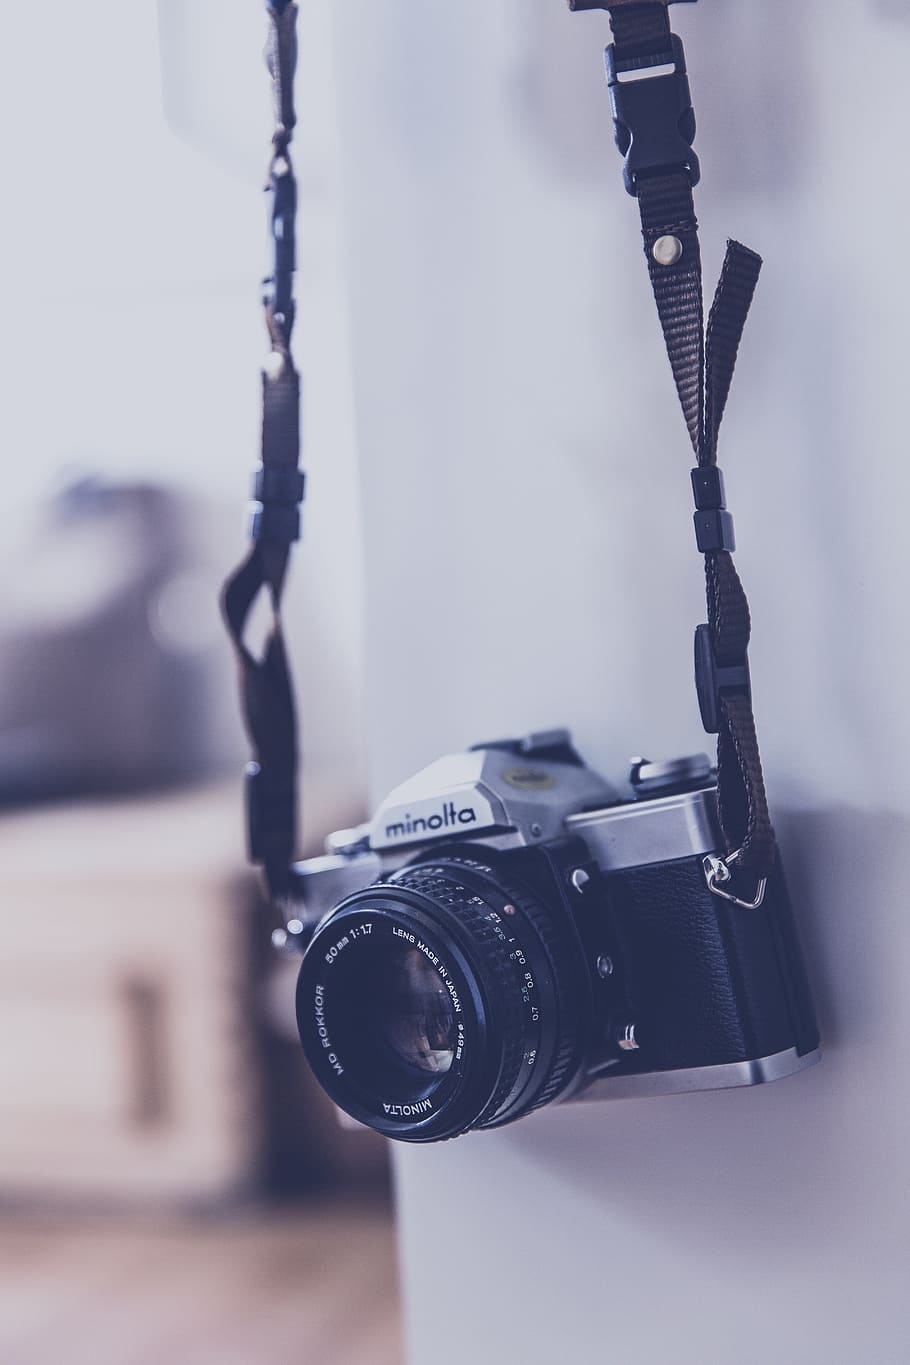 hanging, black, gray, minolta camera, analog, antique, exposure, body, camera, chrome